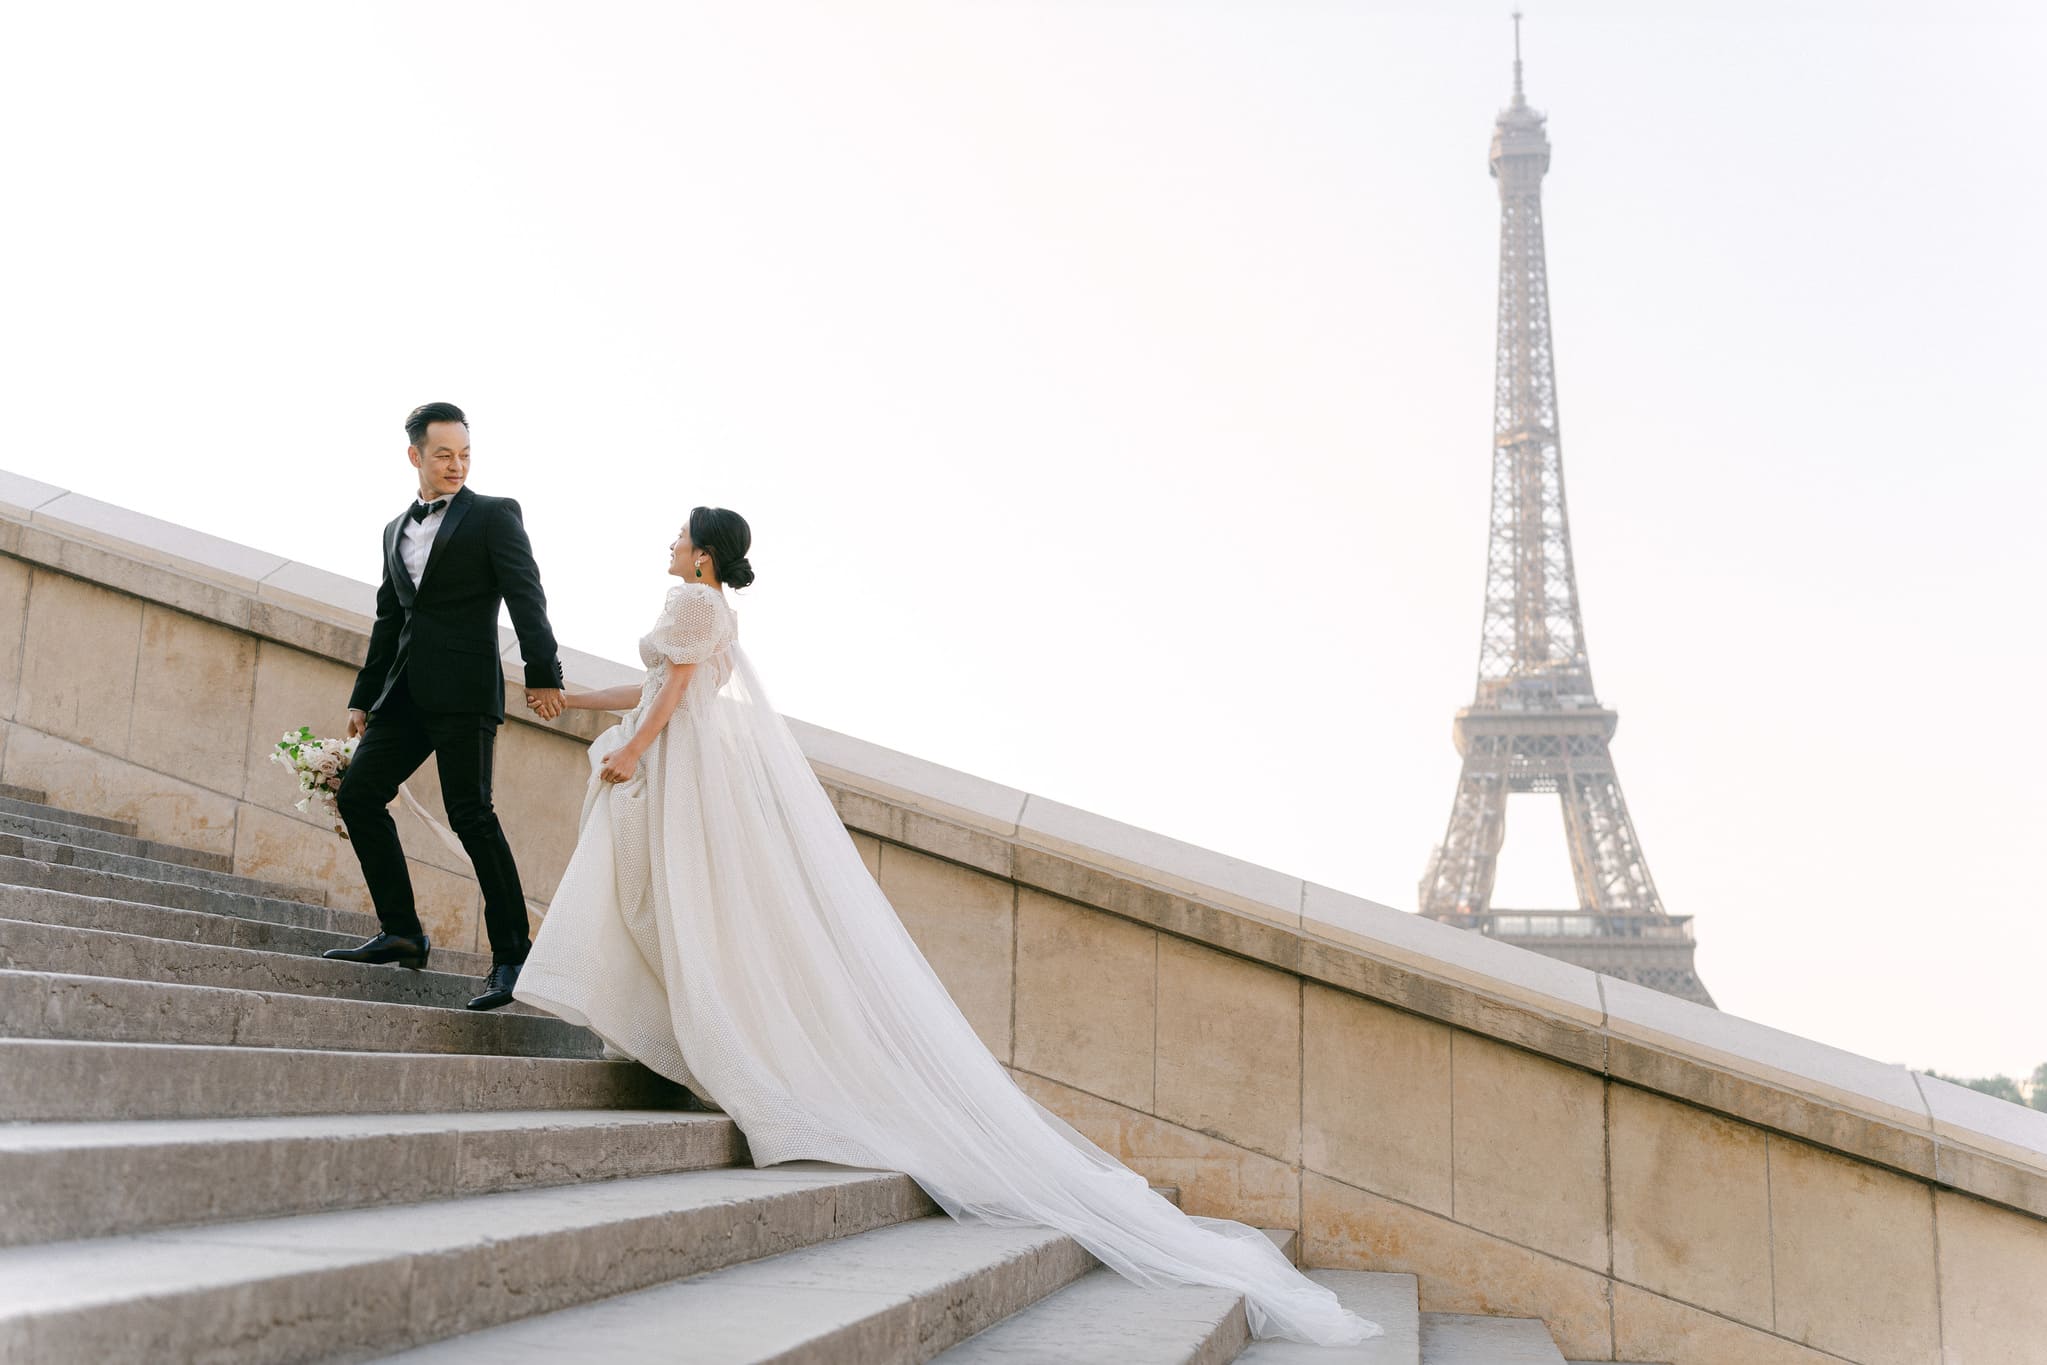 Brautpaar auf den Stufen nahe dem Eiffelturm in Paris, der Bräutigam in einem klassischen schwarzen Smoking, führt die Braut, die ein langes, elegantes Kleid mit Schleppe trägt.